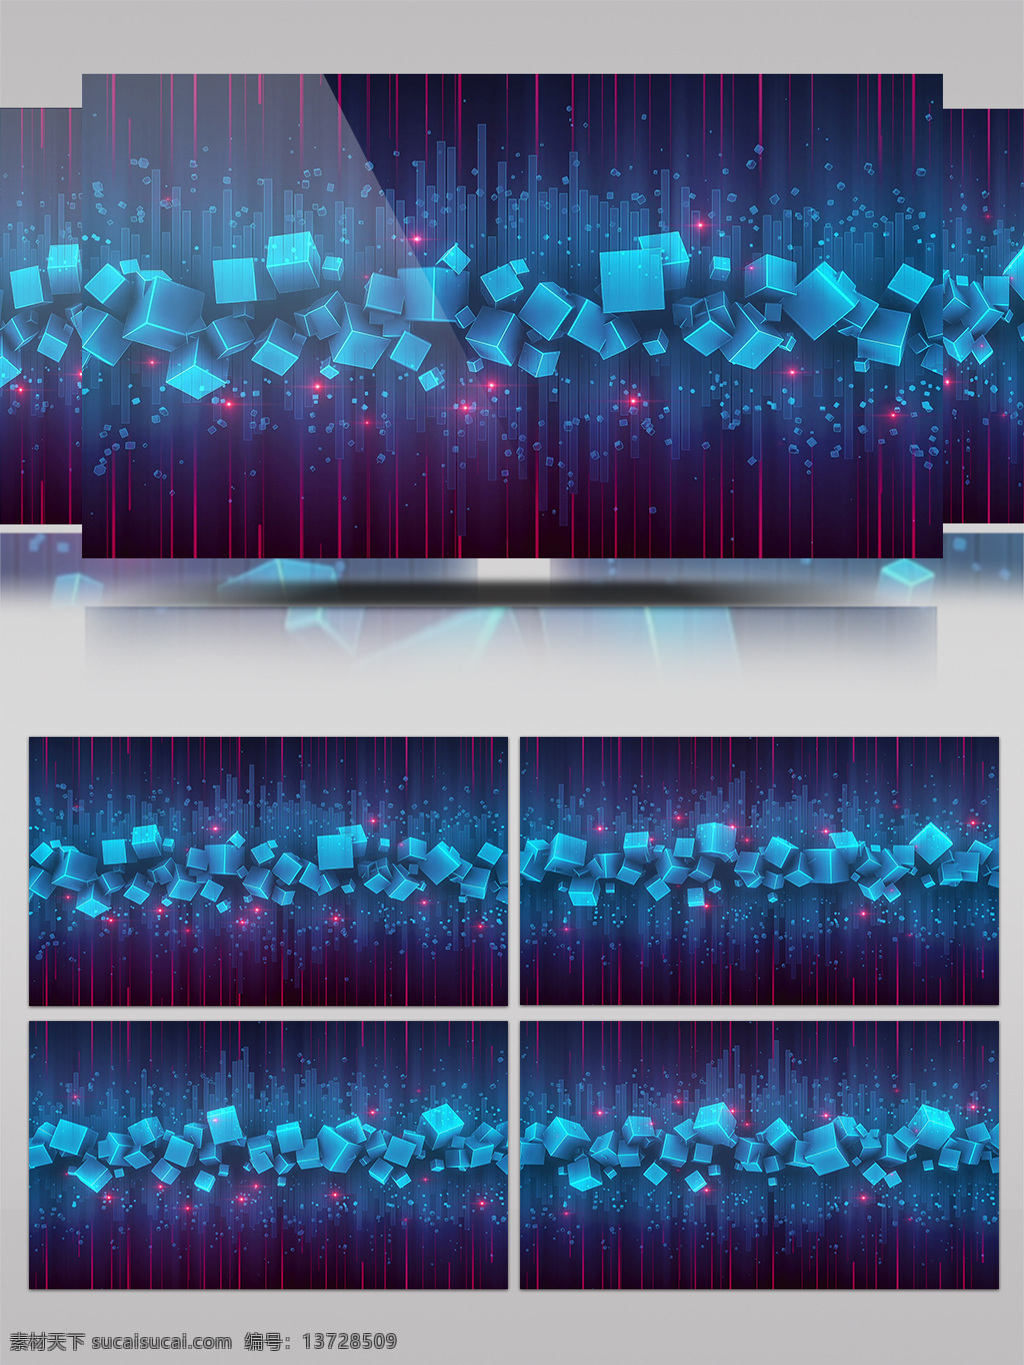 紫色 小 正方体 视频 小正方体 科幻素材 特效大片 进隧道 炫酷回旋 光芒穿梭 光景素材 高清素材 唯美素材 光特效素材